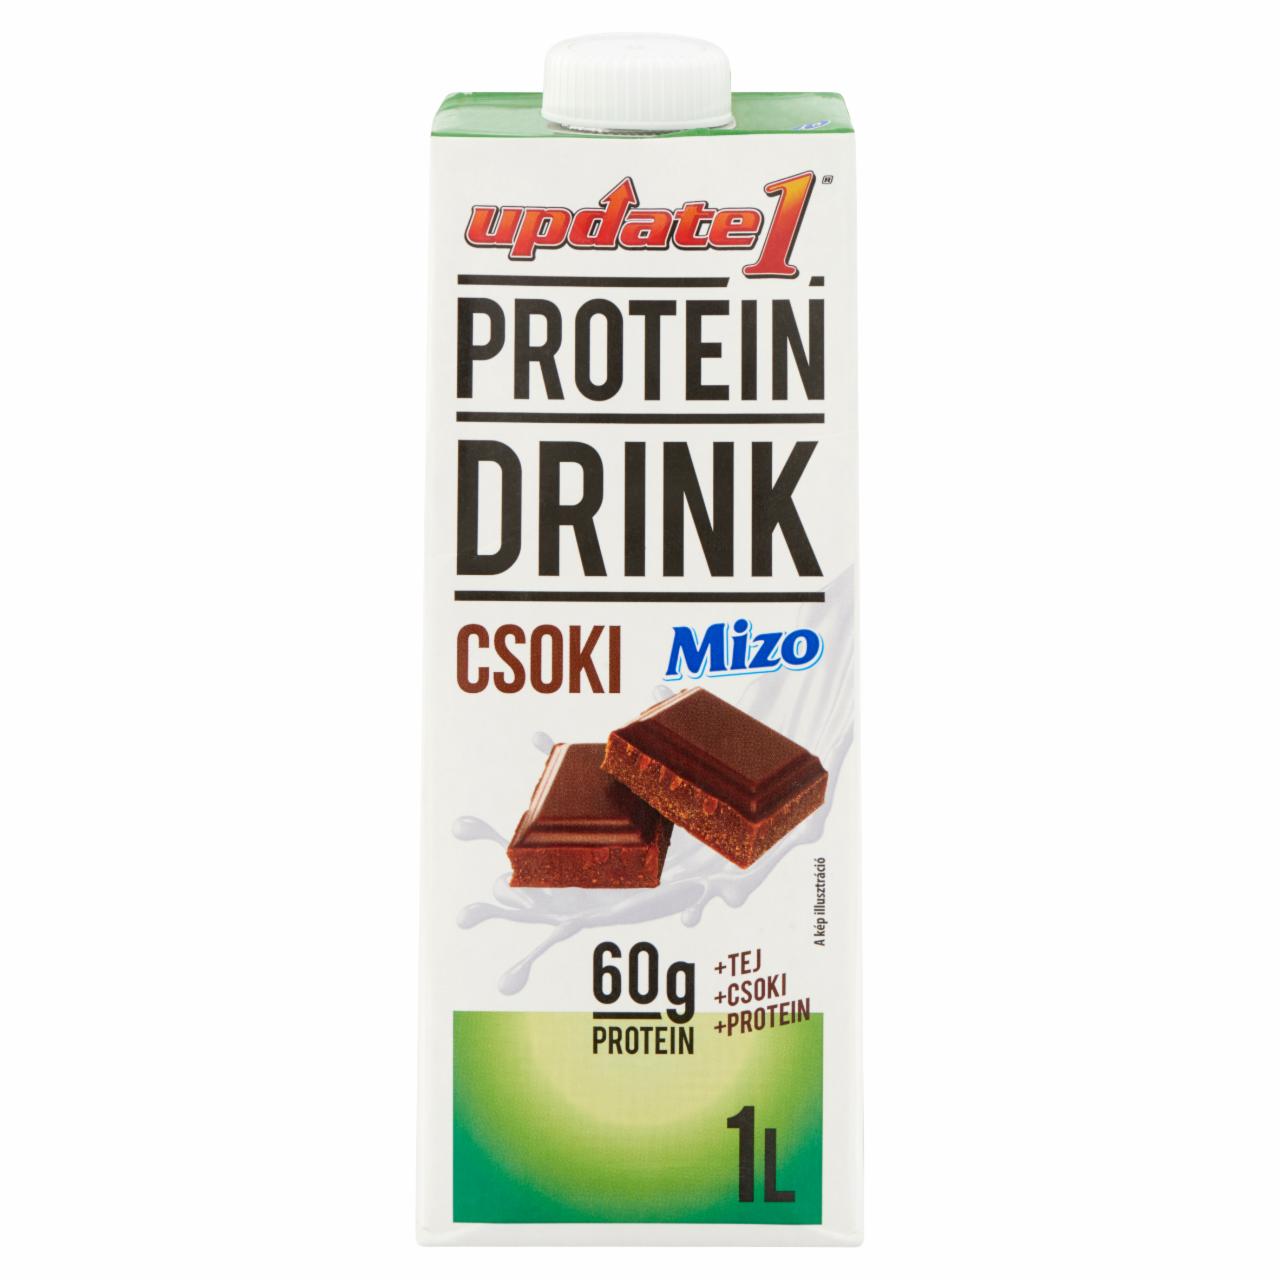 Képek - Mizo Update1 Protein Drink UHT félzsíros csokoládés tejkészítmény 1 l